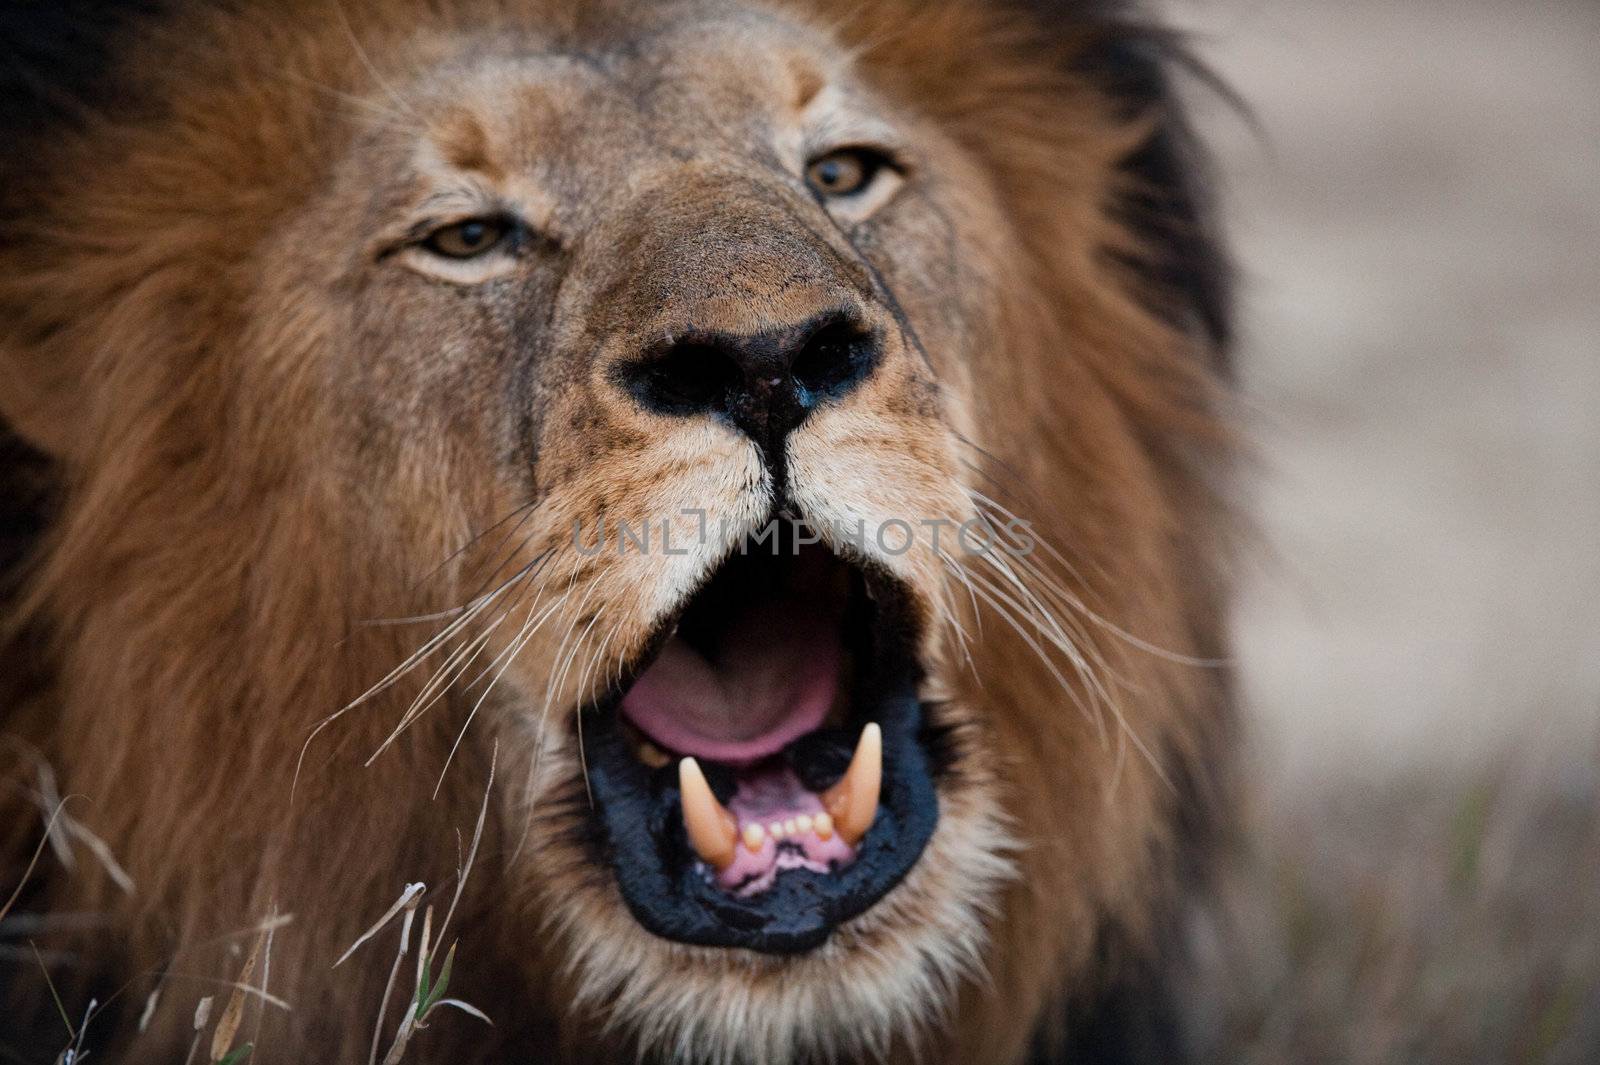 Lion barking near Kruger National Park, South Africa